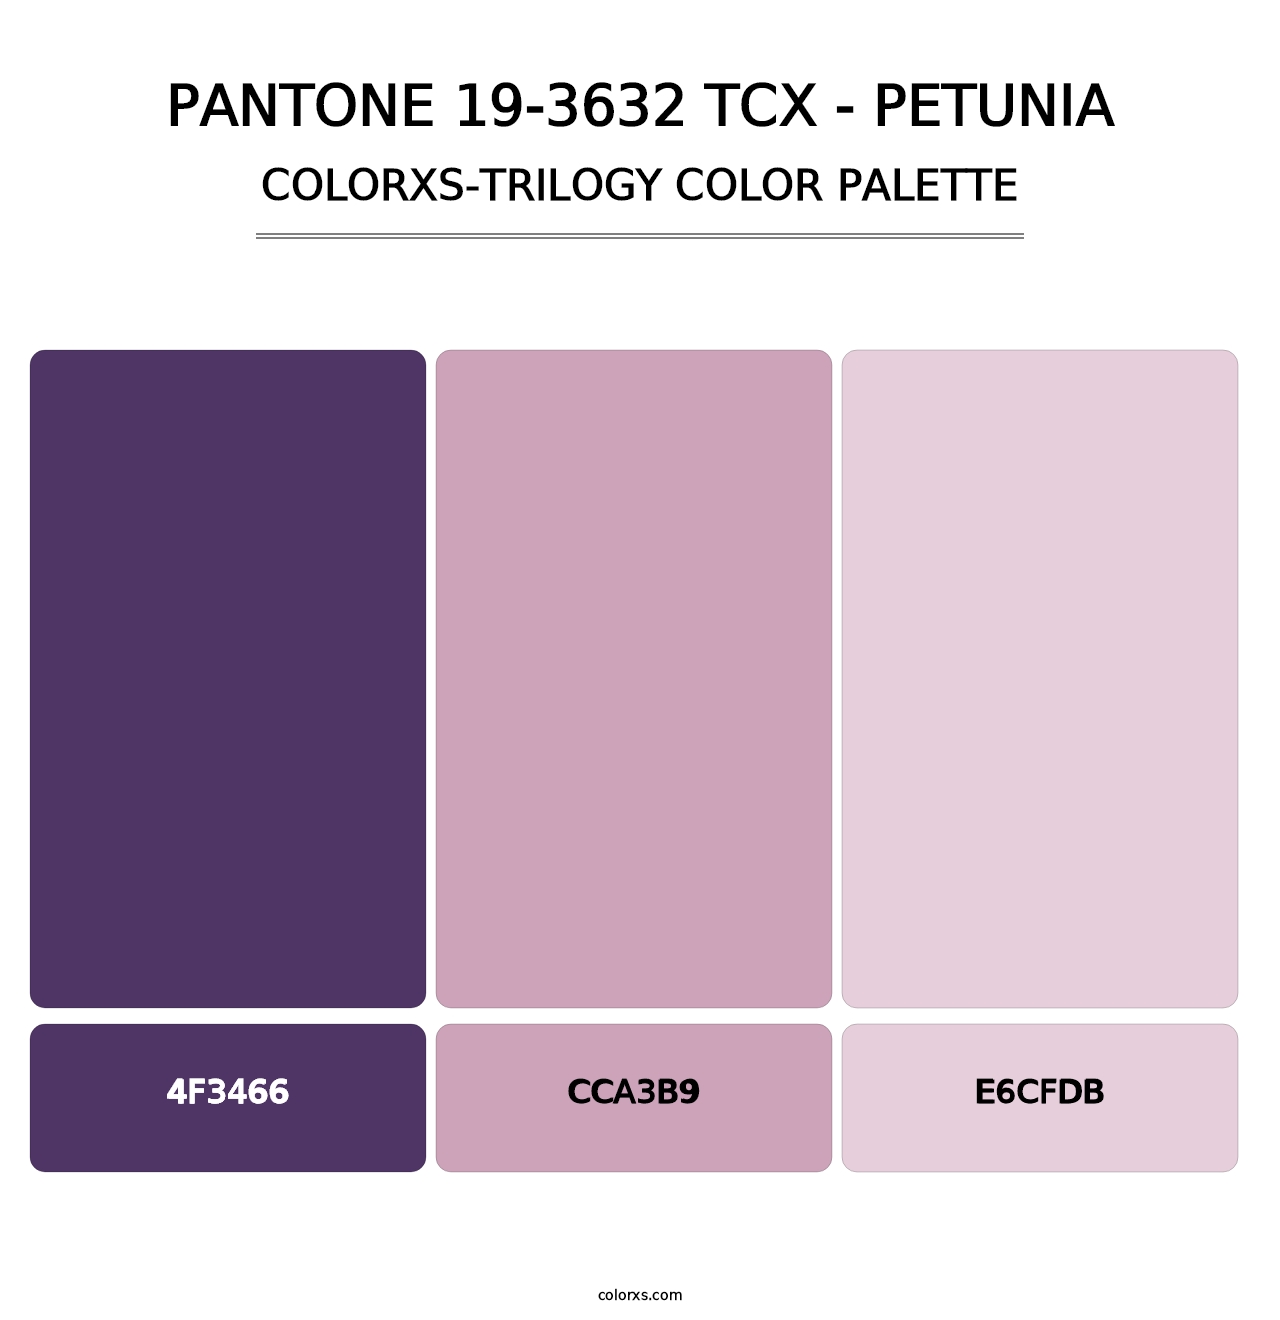 PANTONE 19-3632 TCX - Petunia - Colorxs Trilogy Palette